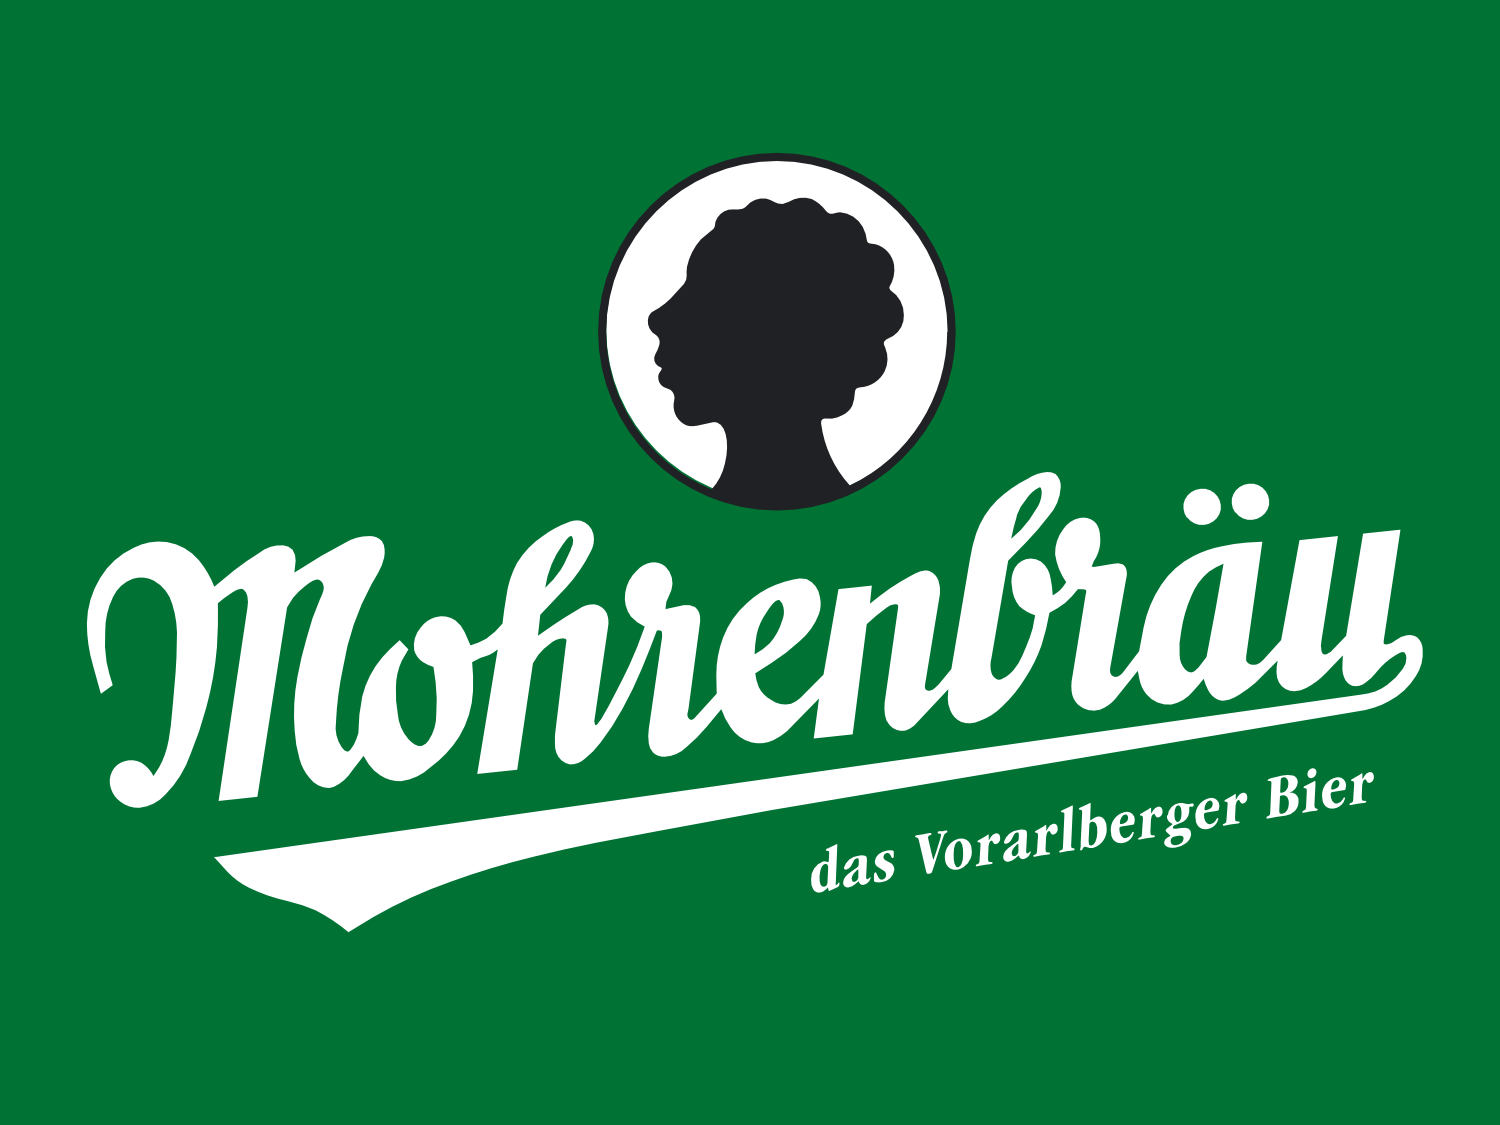 Mohren - Das Vorarlberger Bier seit 1834